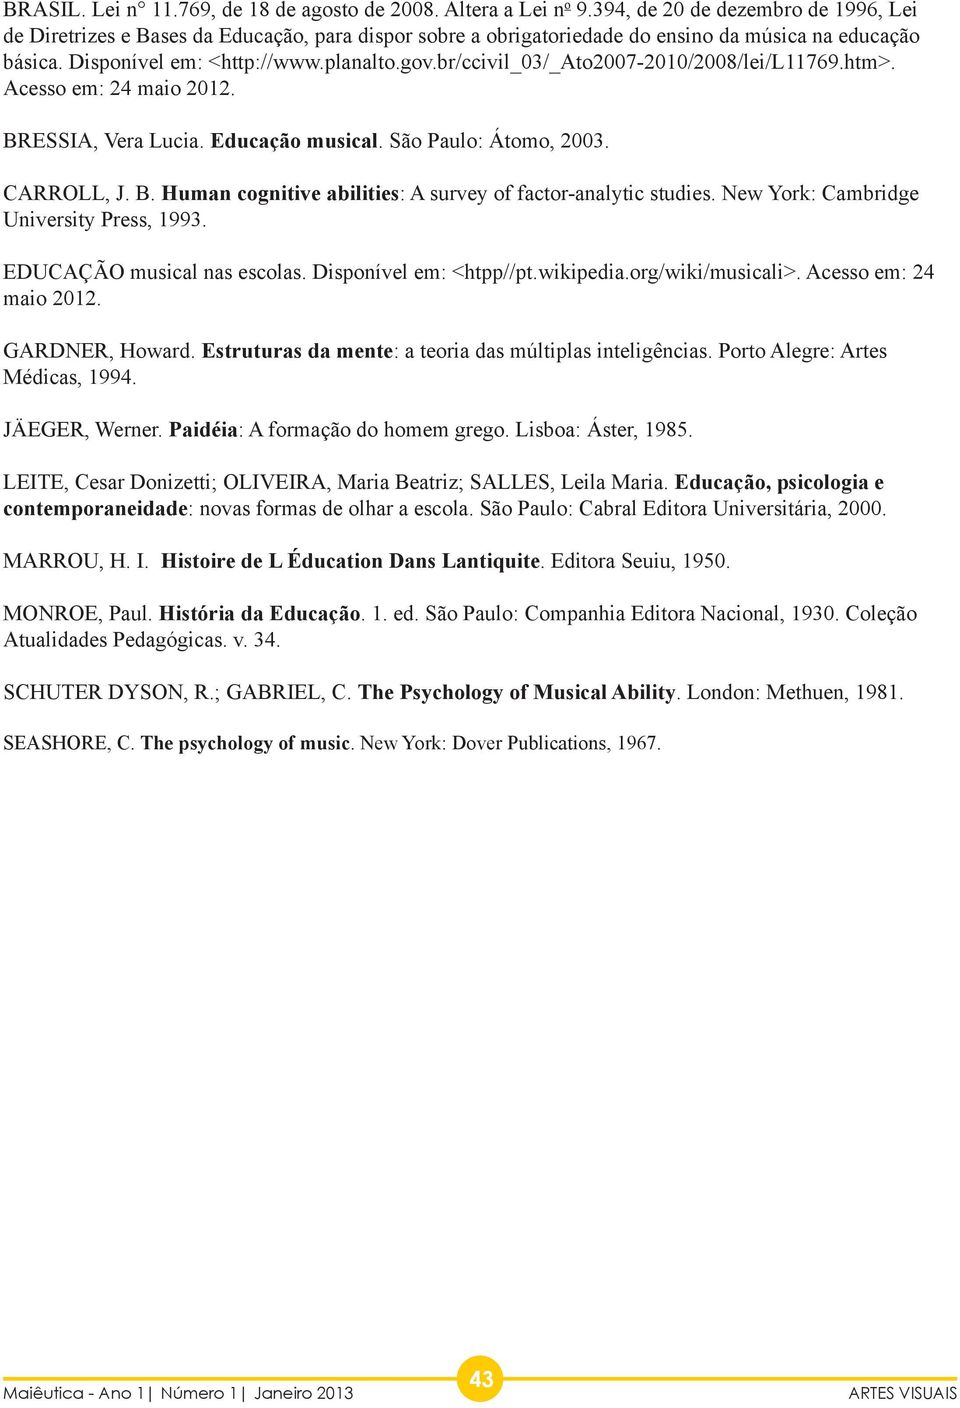 br/ccivil_03/_ato2007-2010/2008/lei/l11769.htm>. Acesso em: 24 maio 2012. BRESSIA, Vera Lucia. Educação musical. São Paulo: Átomo, 2003. CARROLL, J. B. Human cognitive abilities: A survey of factor-analytic studies.